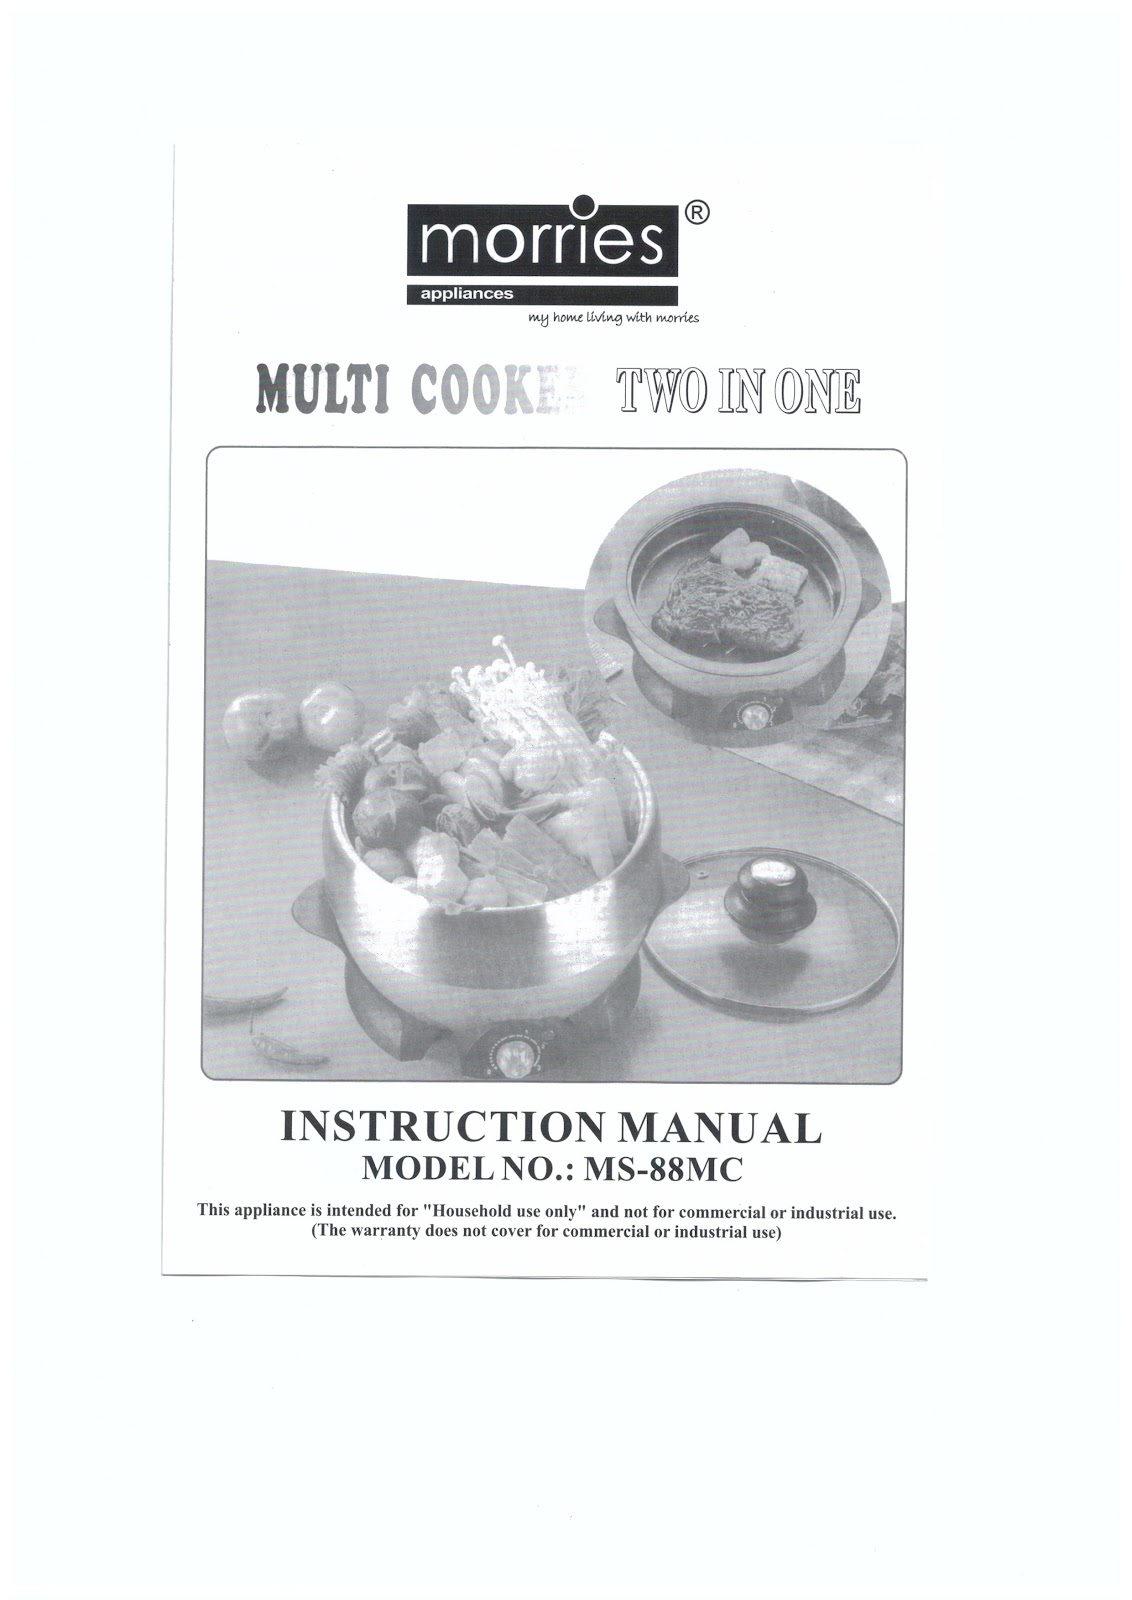 bosch power mixx 800w instruction manual